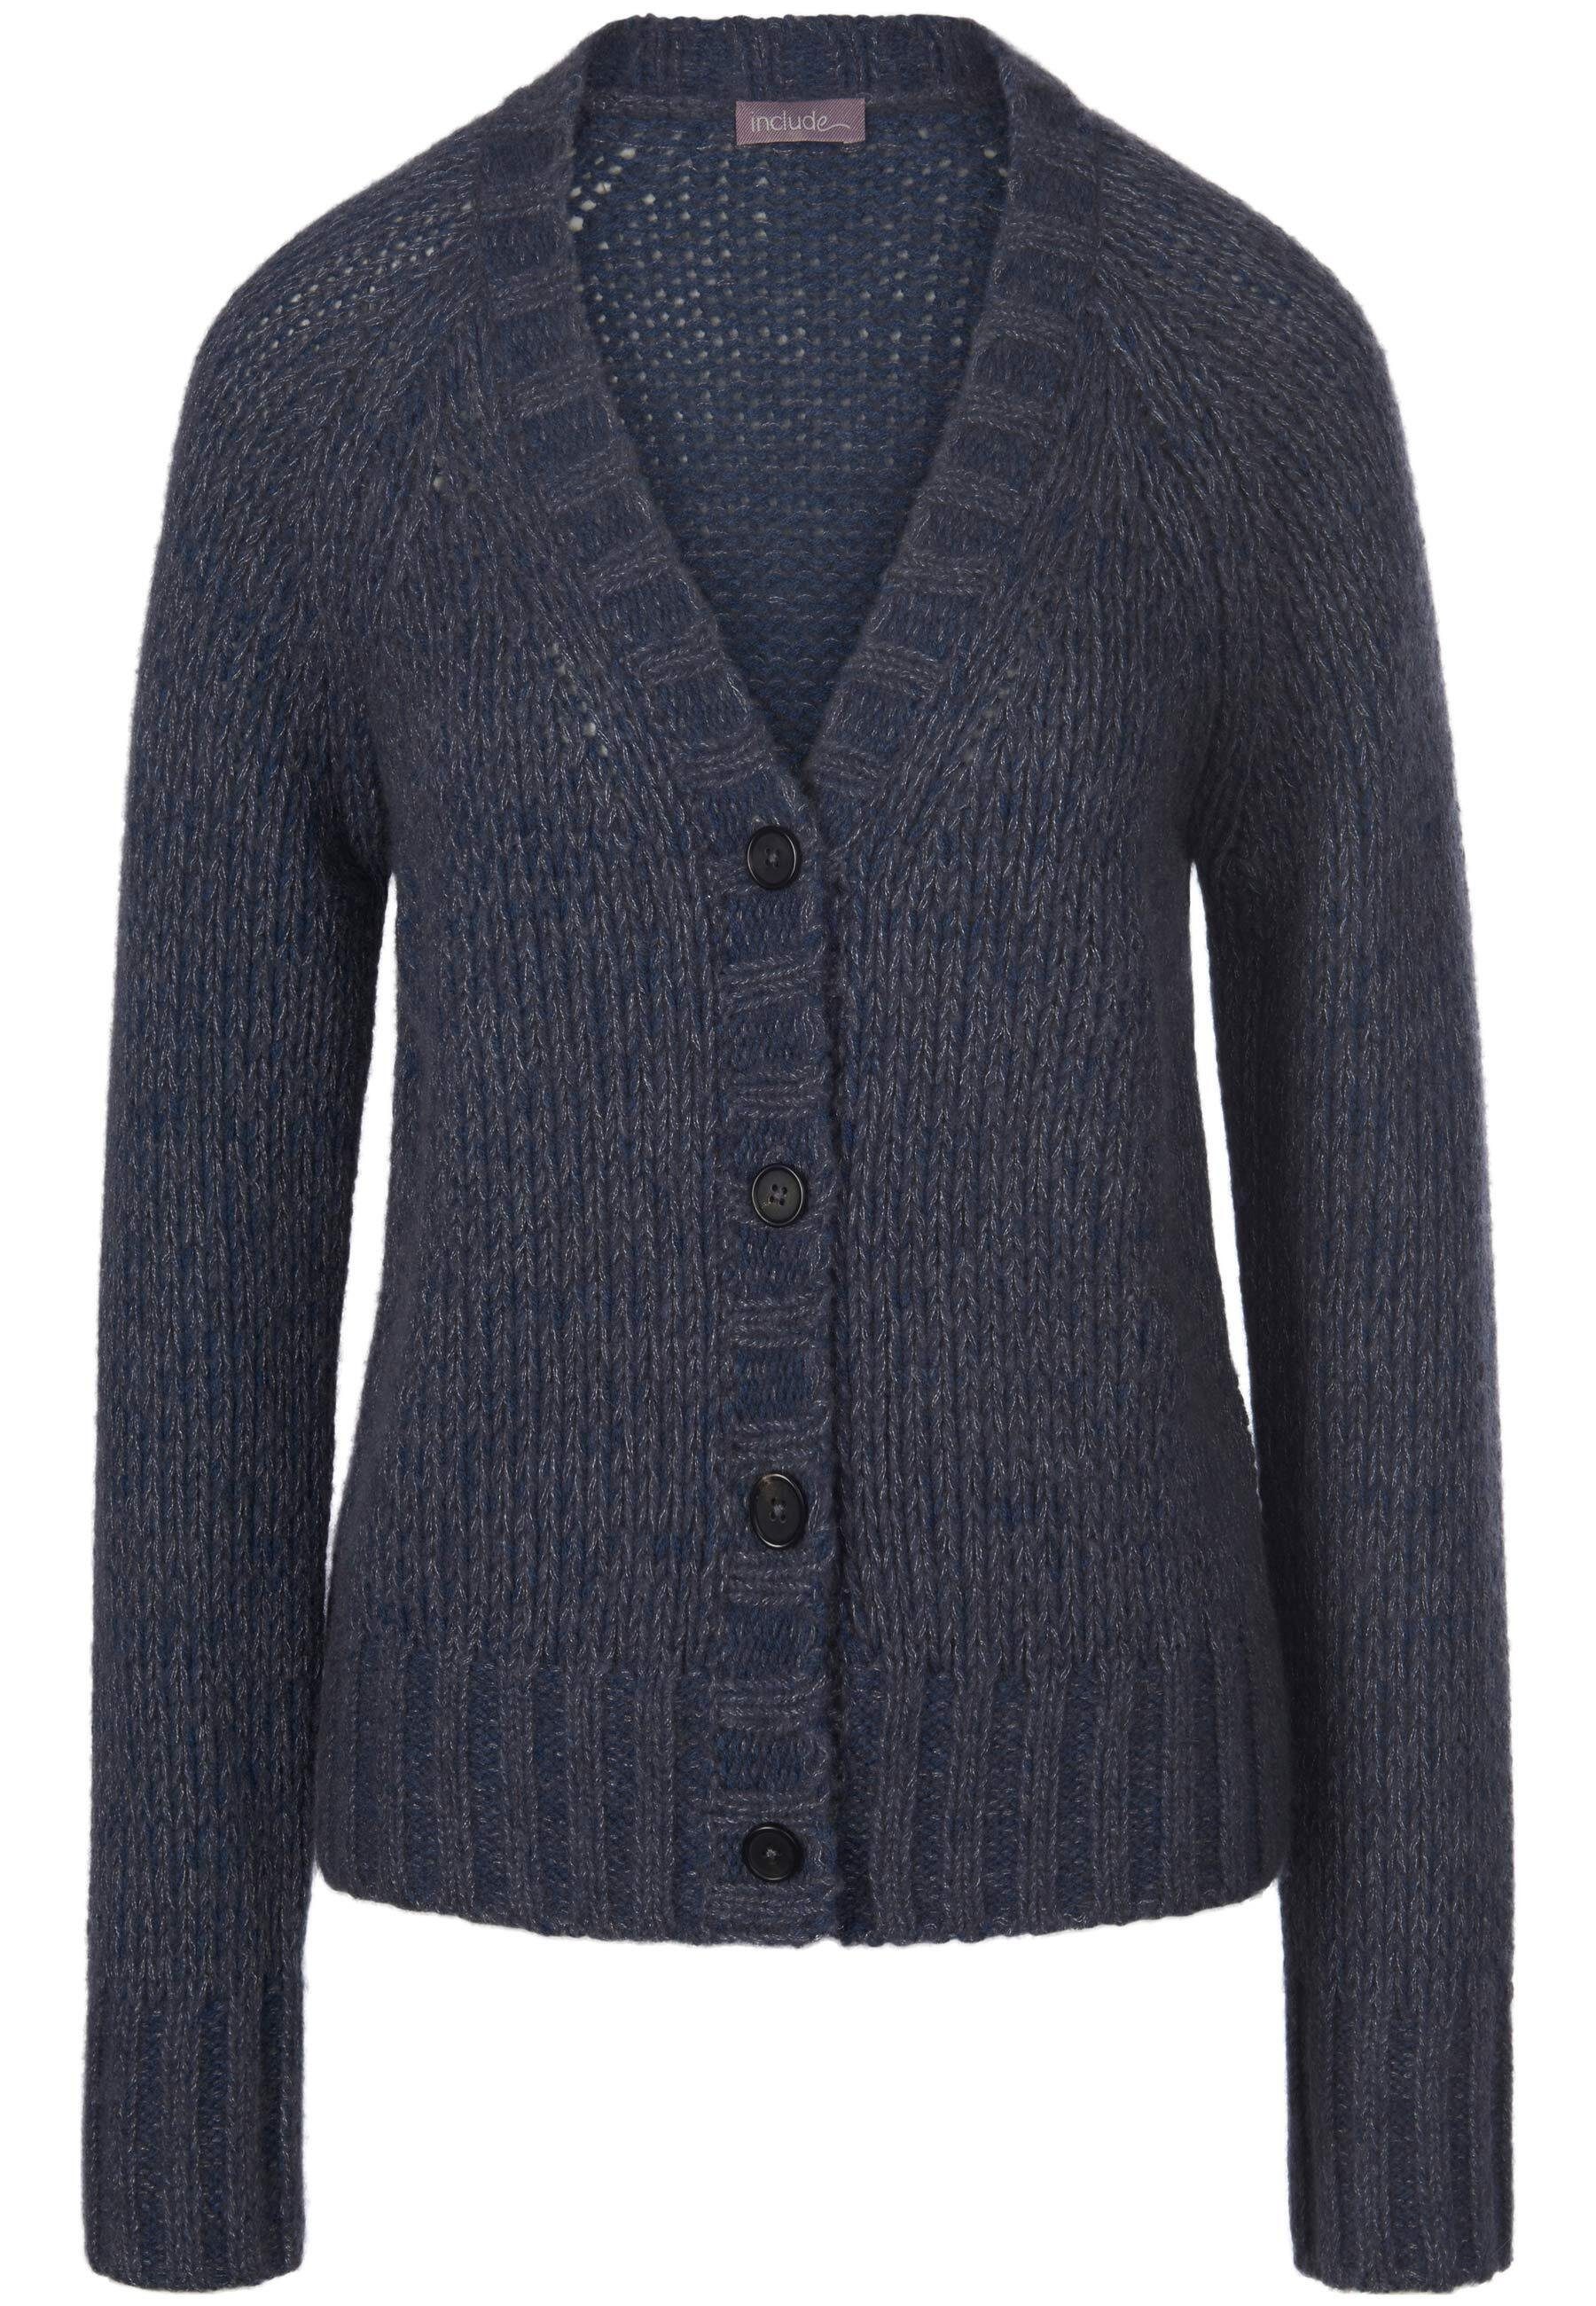 Strickjacke wool jeansblau-melange include